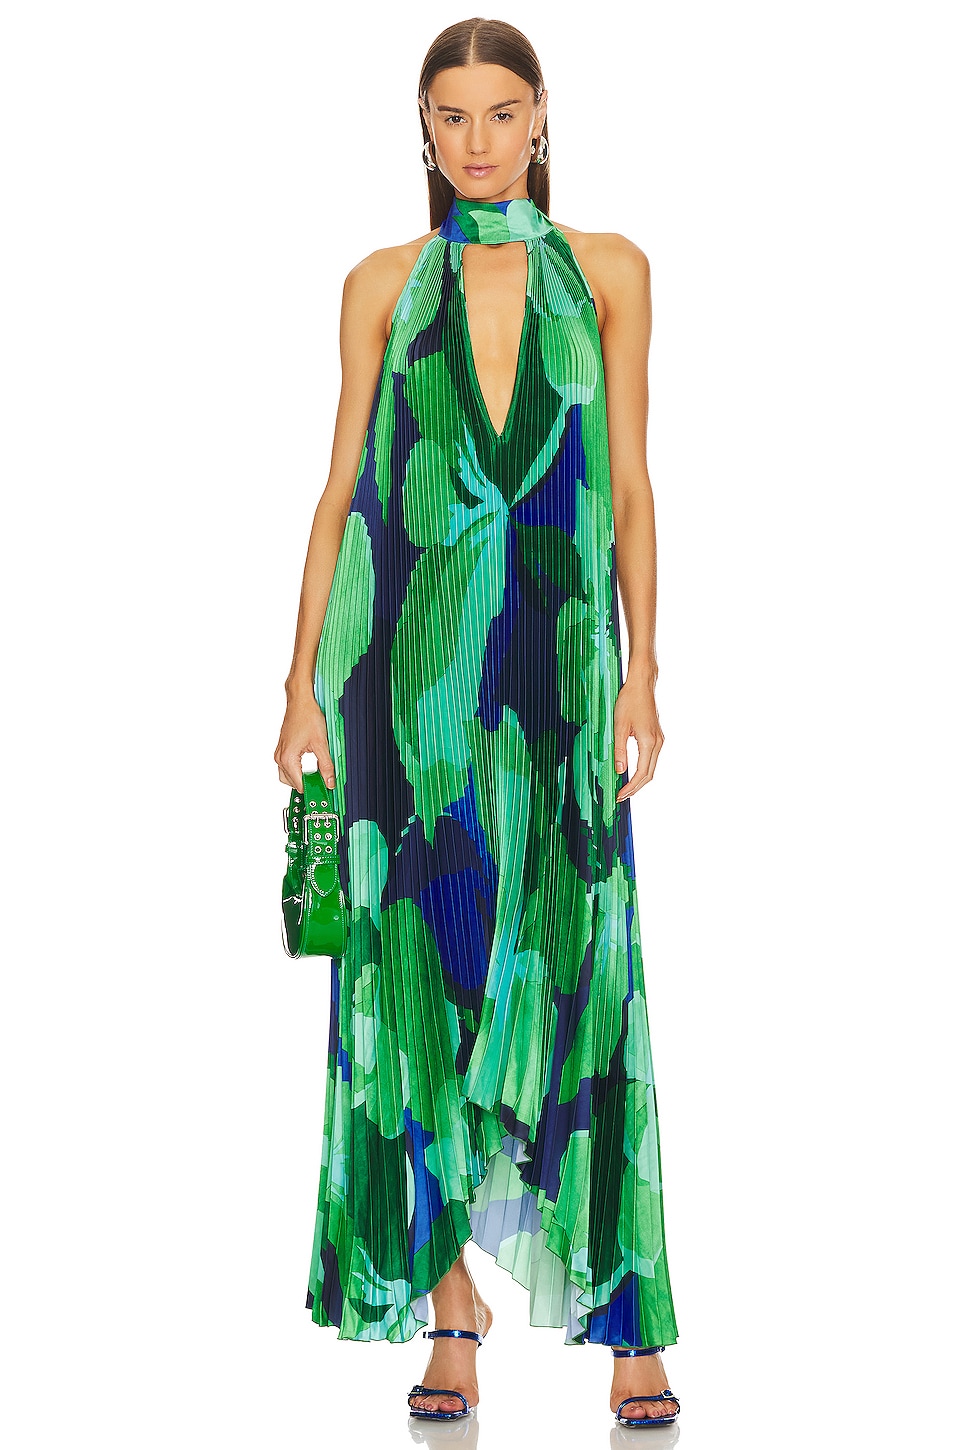 L'IDEE Opera Gown in Capri Print Green